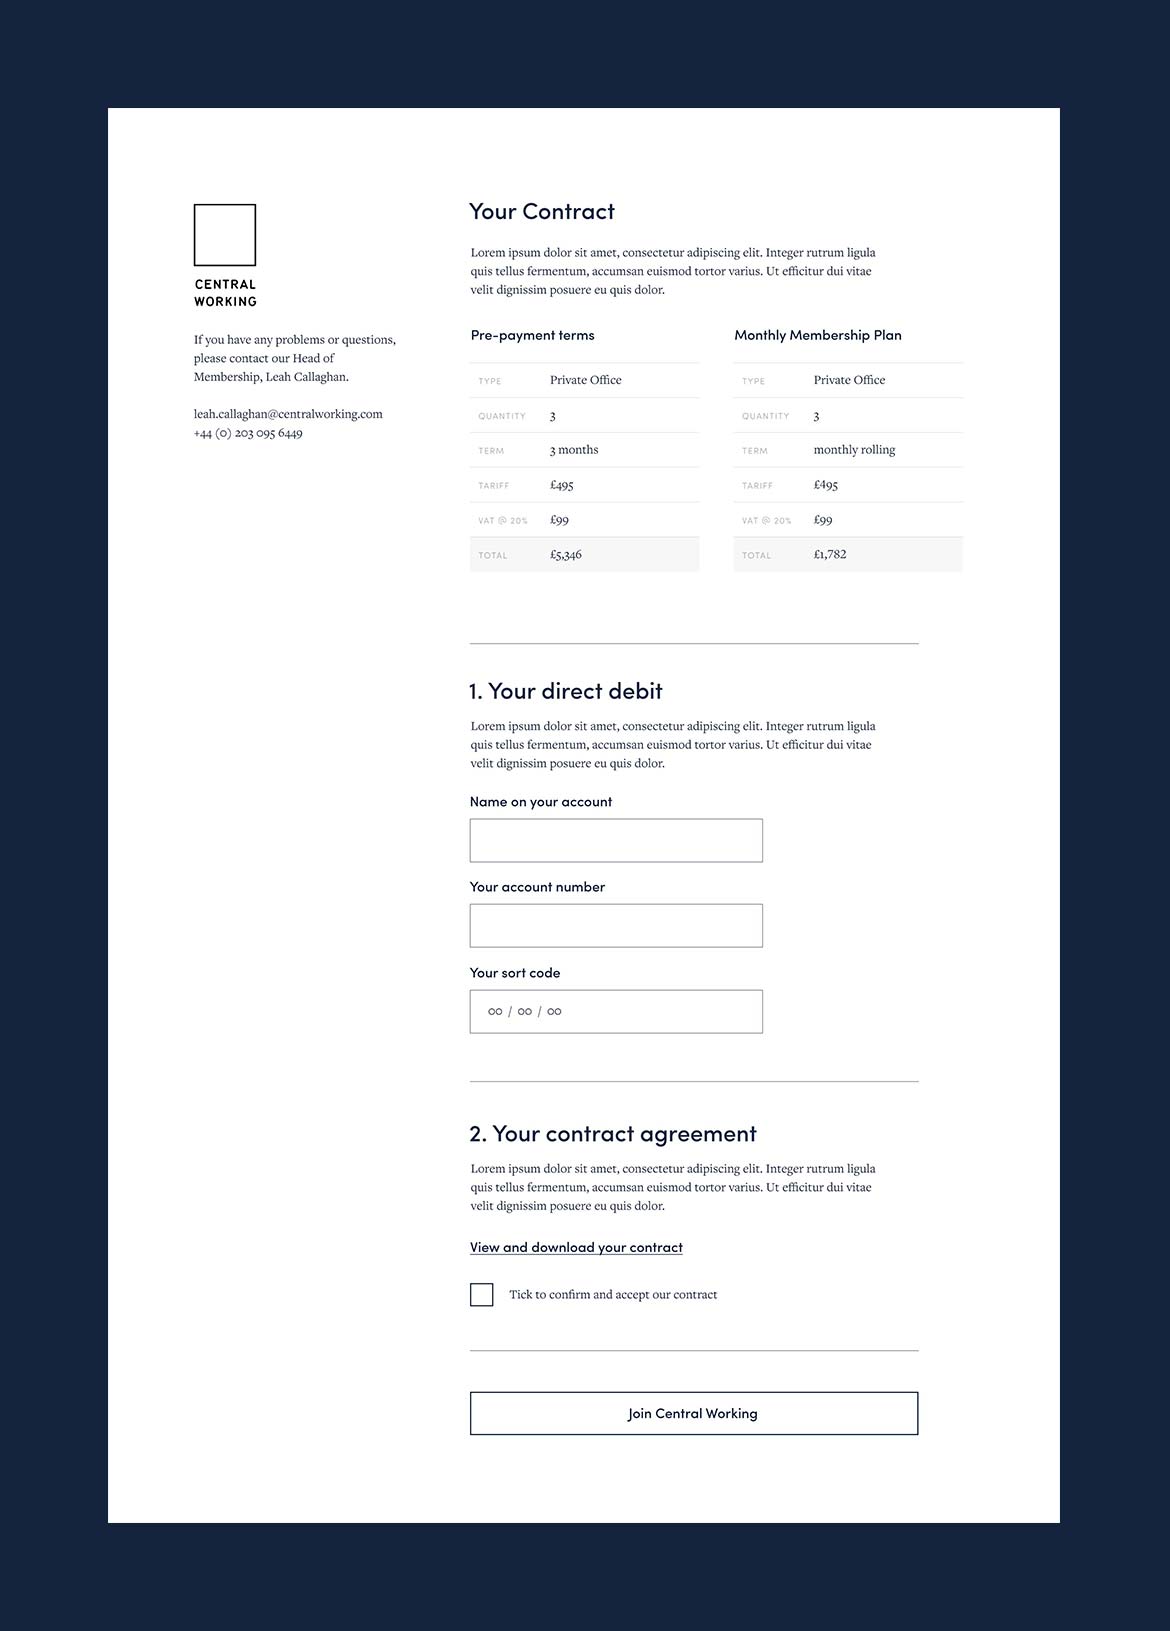 Central Working website signup form